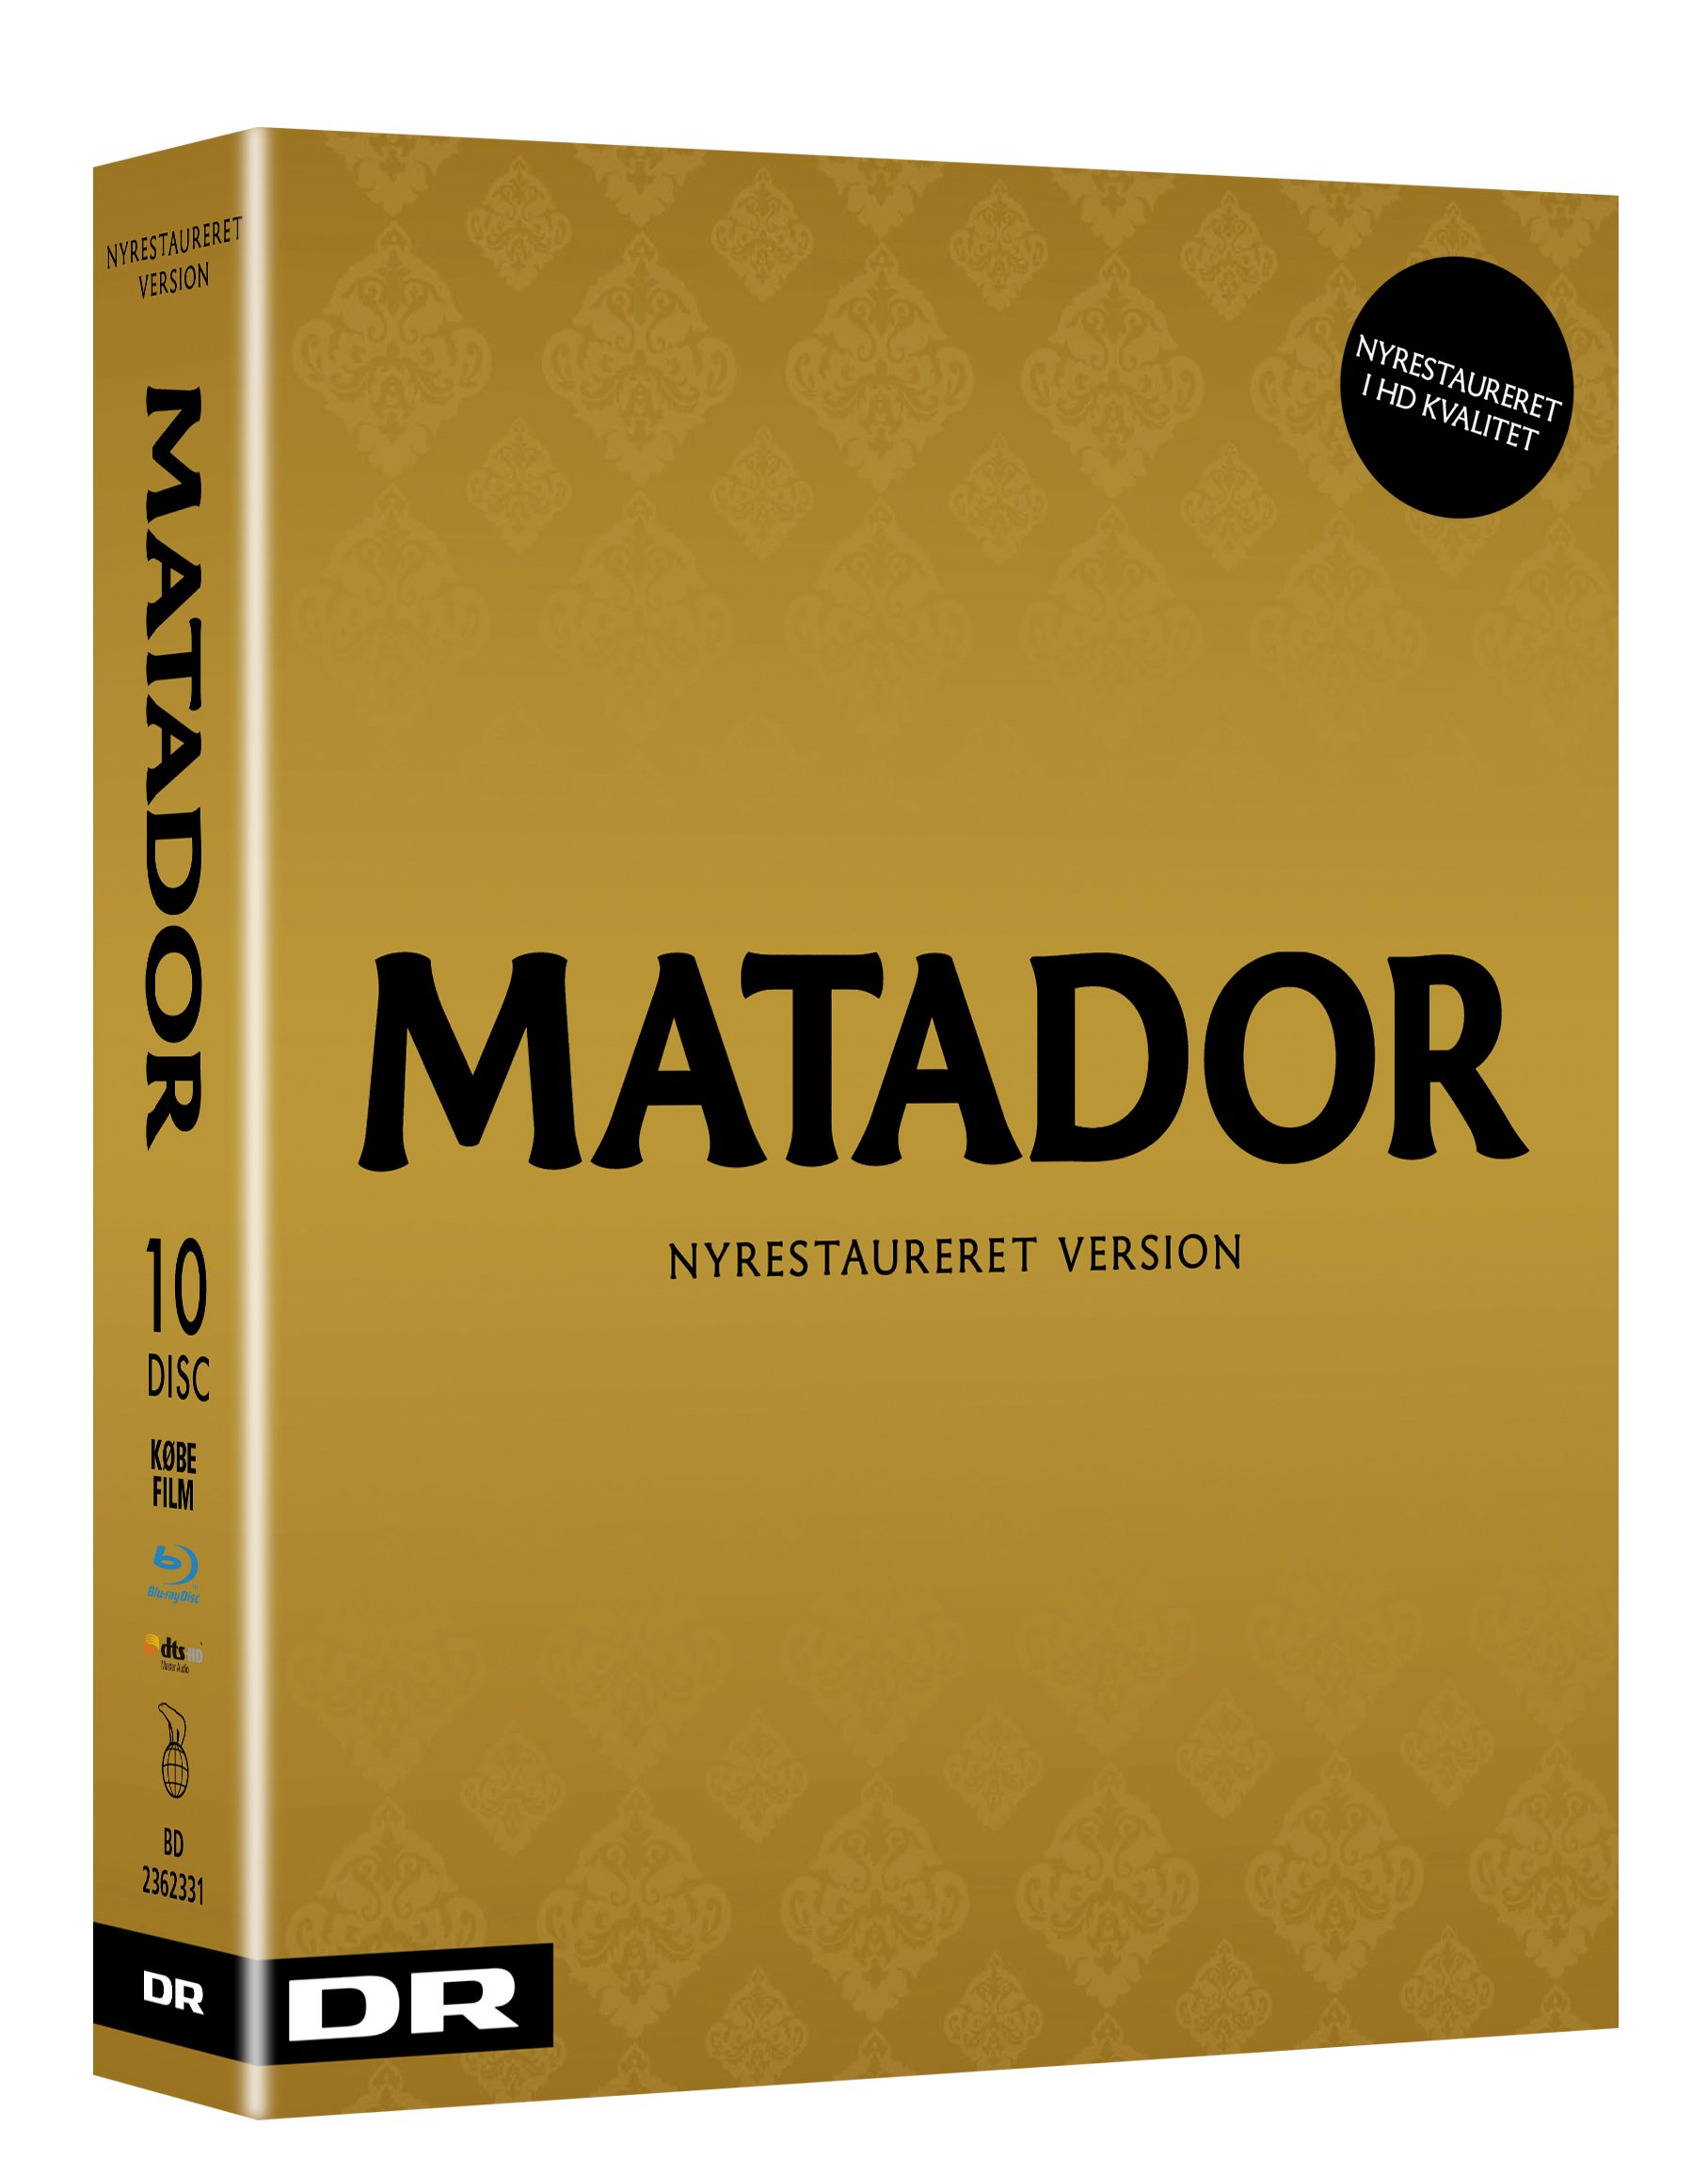 Matador - Restored Edition 2017 (Blu-Ray) von Nordisk Film